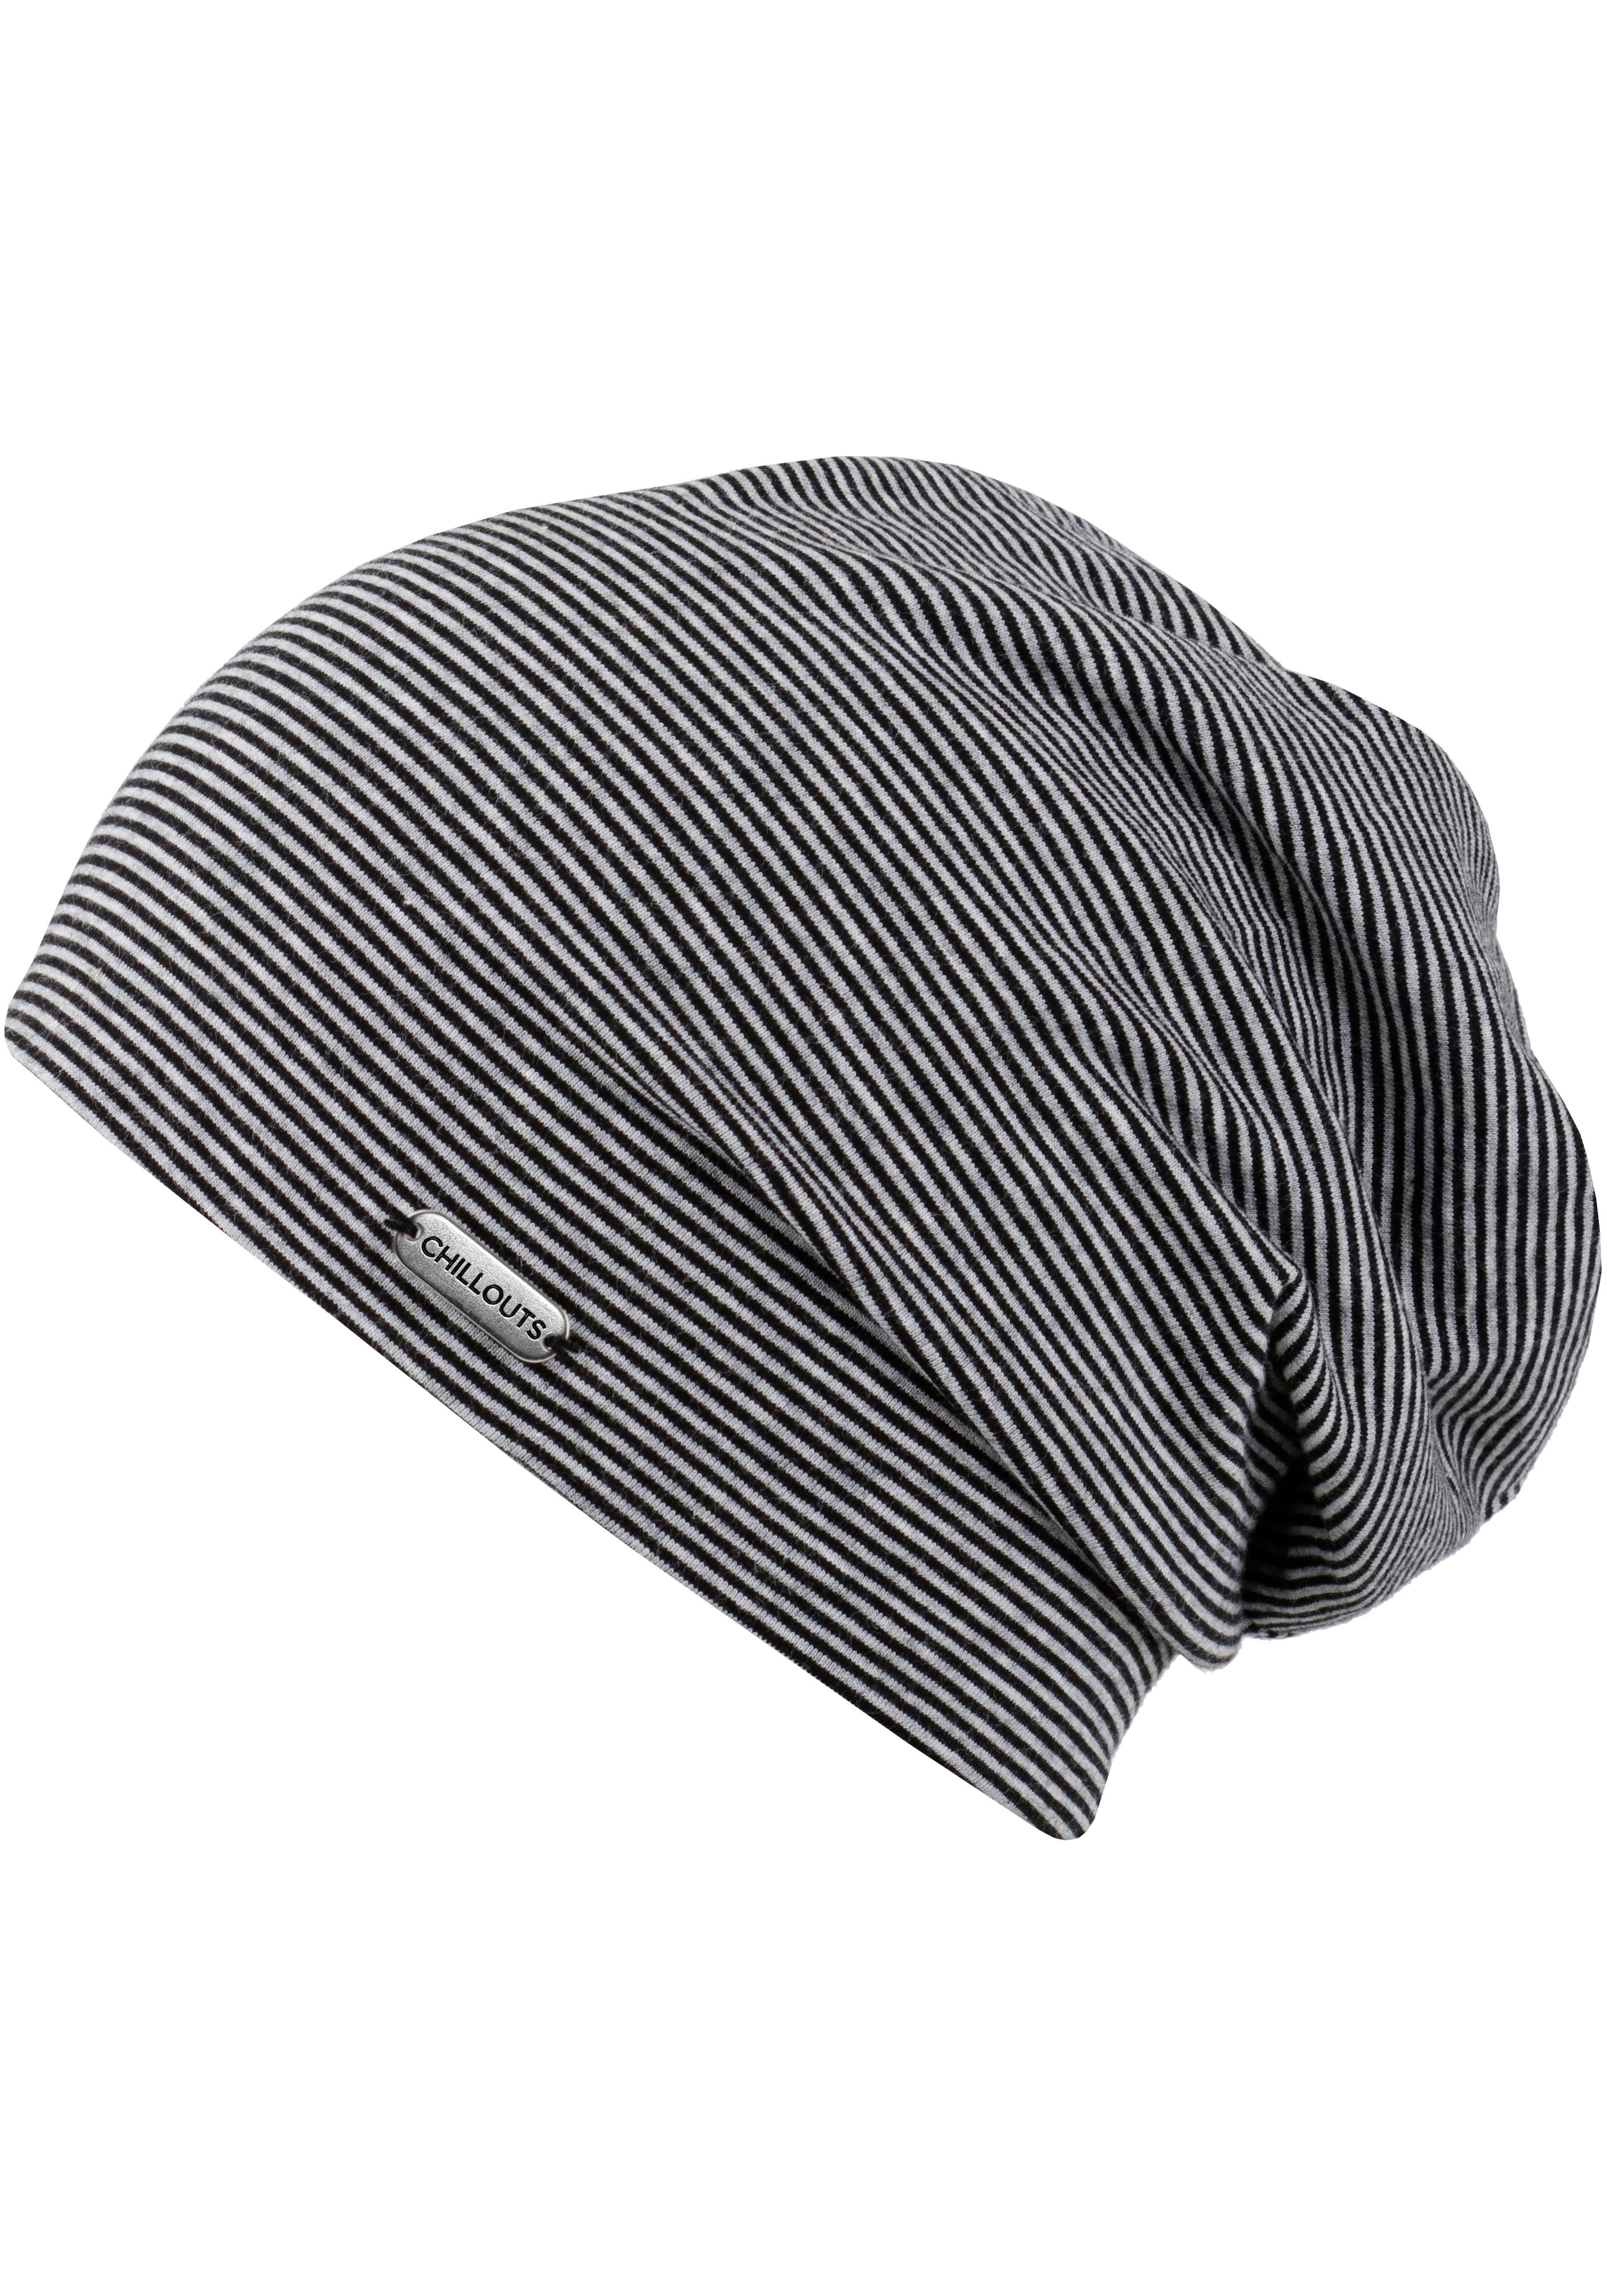 chillouts Beanie Pittsburgh Hat, gestreift schwarz-grau